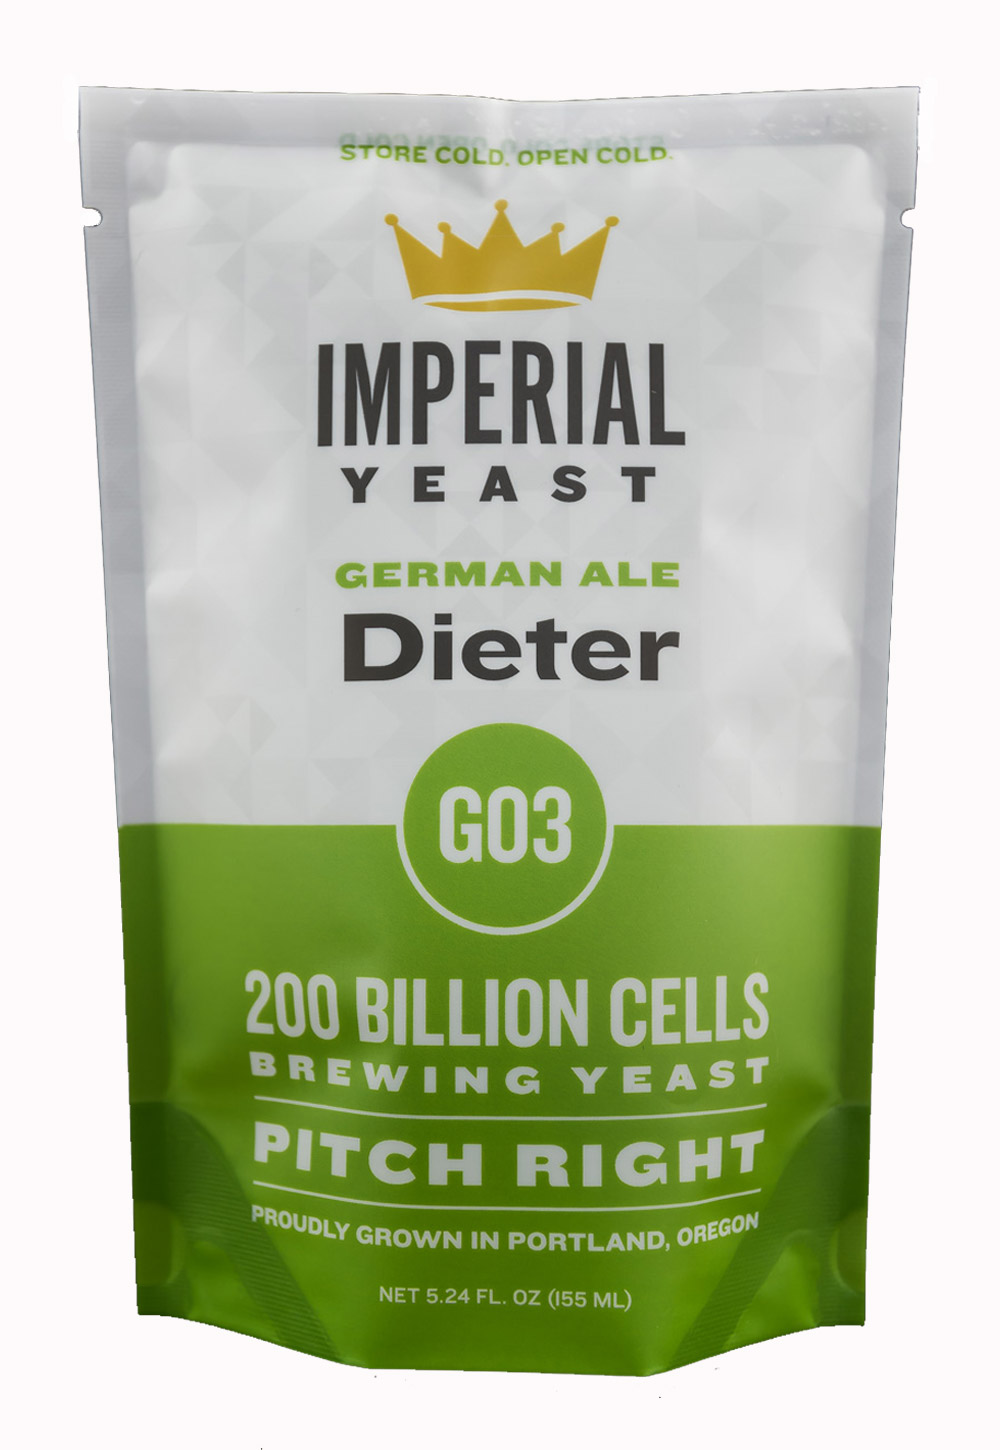 Imperial Yeast G03 Dieter